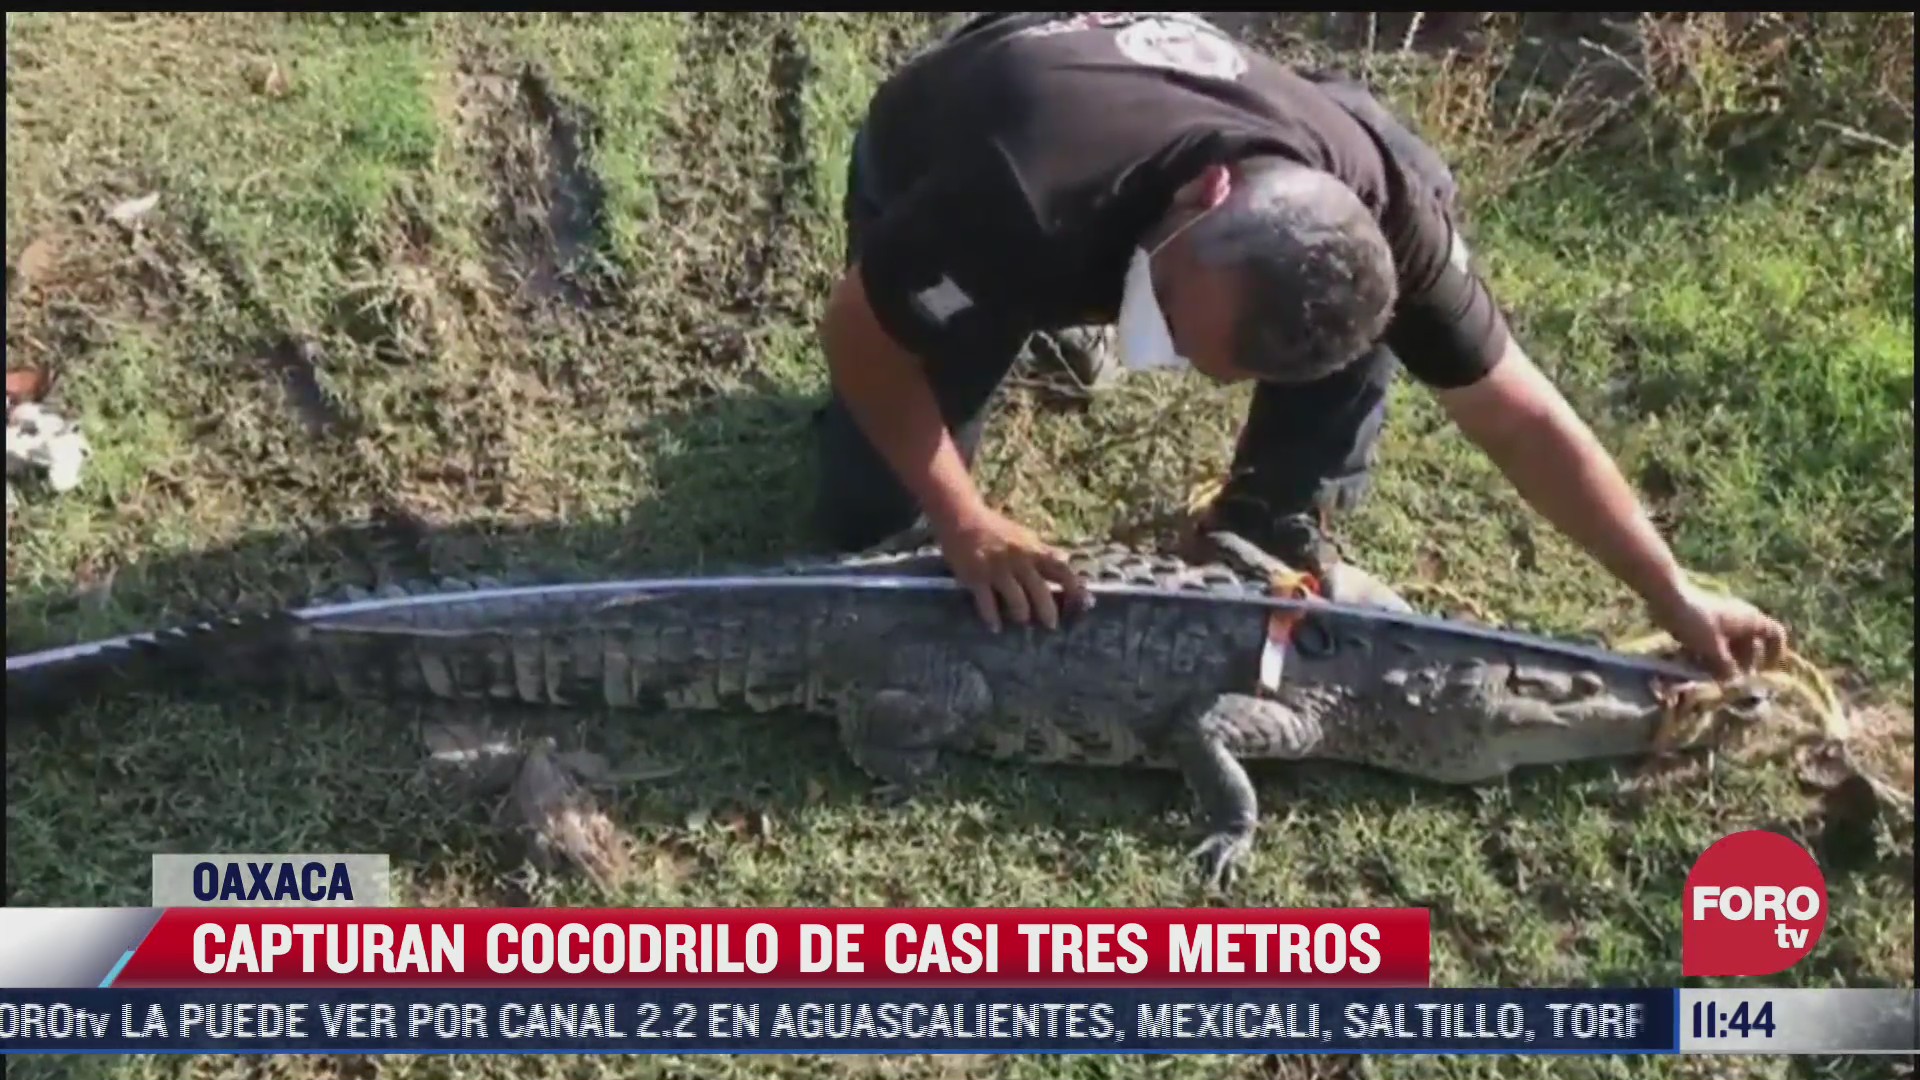 capturan cocodrilo de casi tres metros en oaxaca